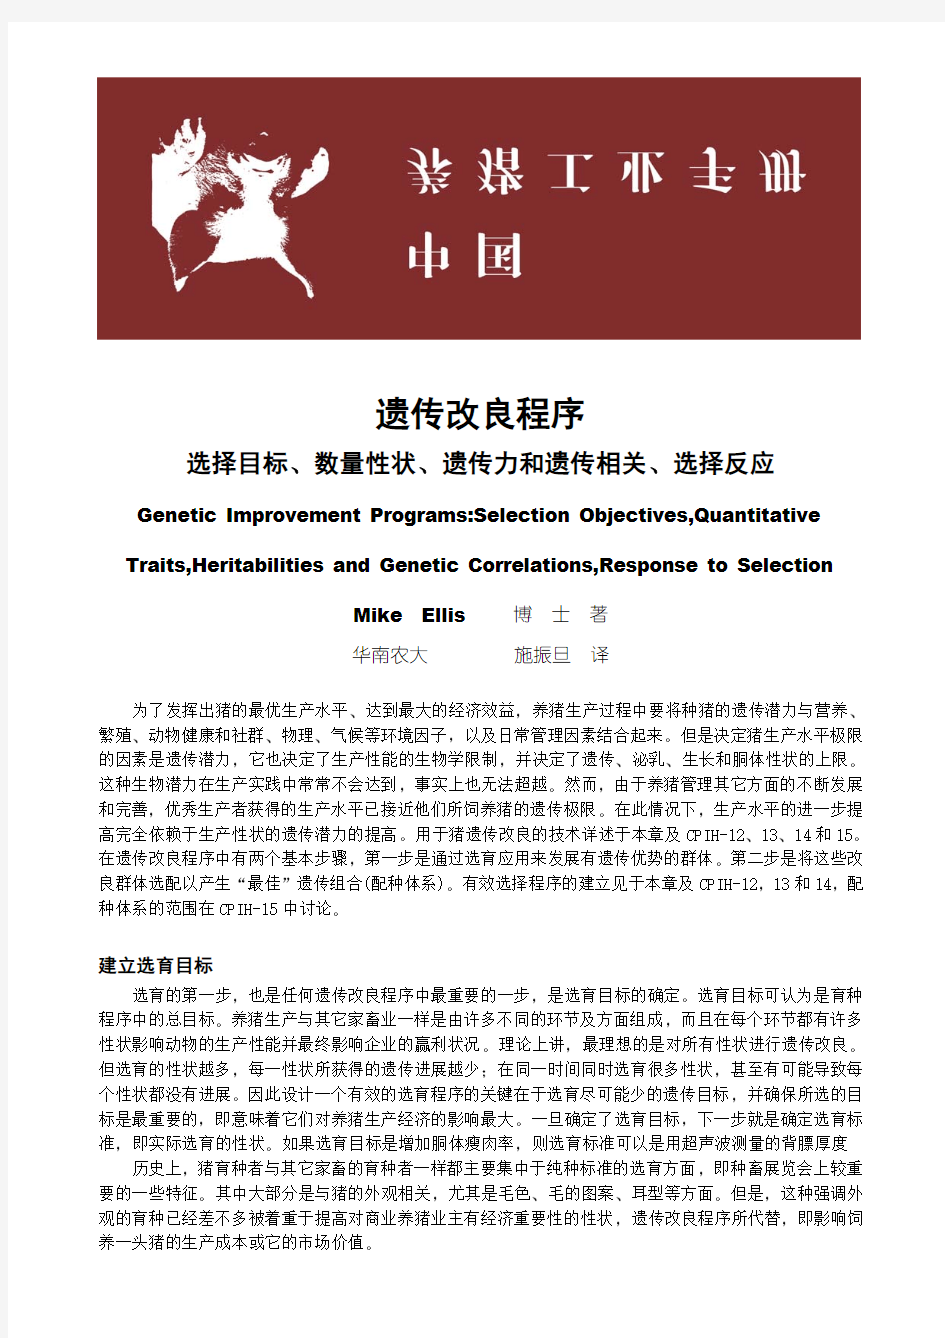 中国养猪工业手册(育种类和遗传类)